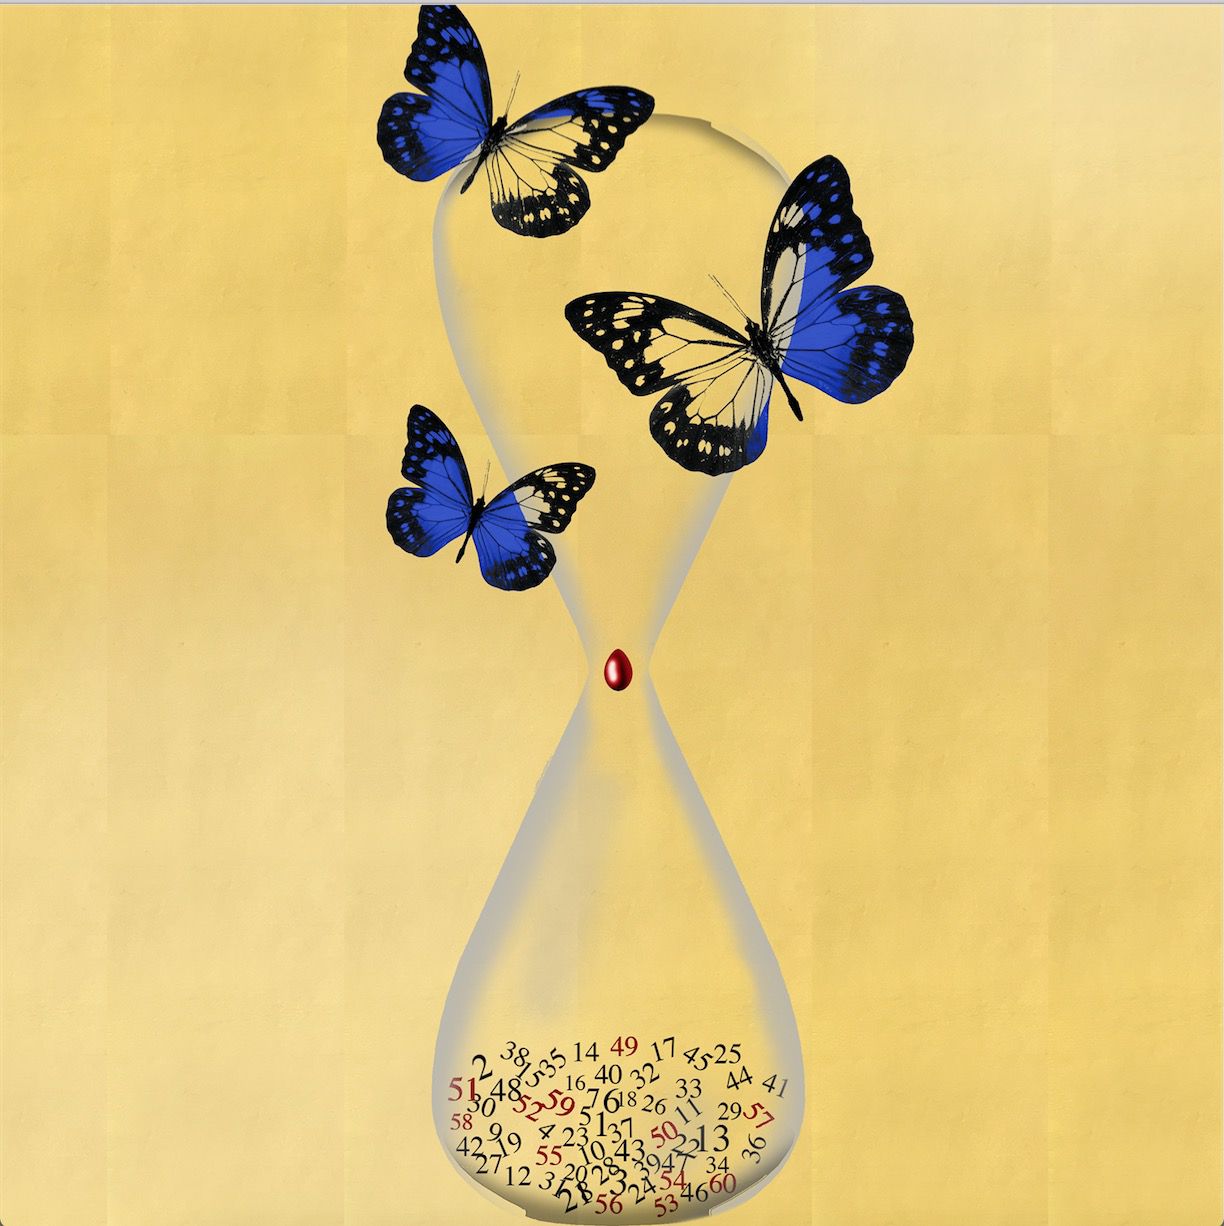 Veronese Marco: Wir definieren das Leben eines Schmetterlings als kurz, ohne seine Konzeption der Unendlichkeit zu kennen